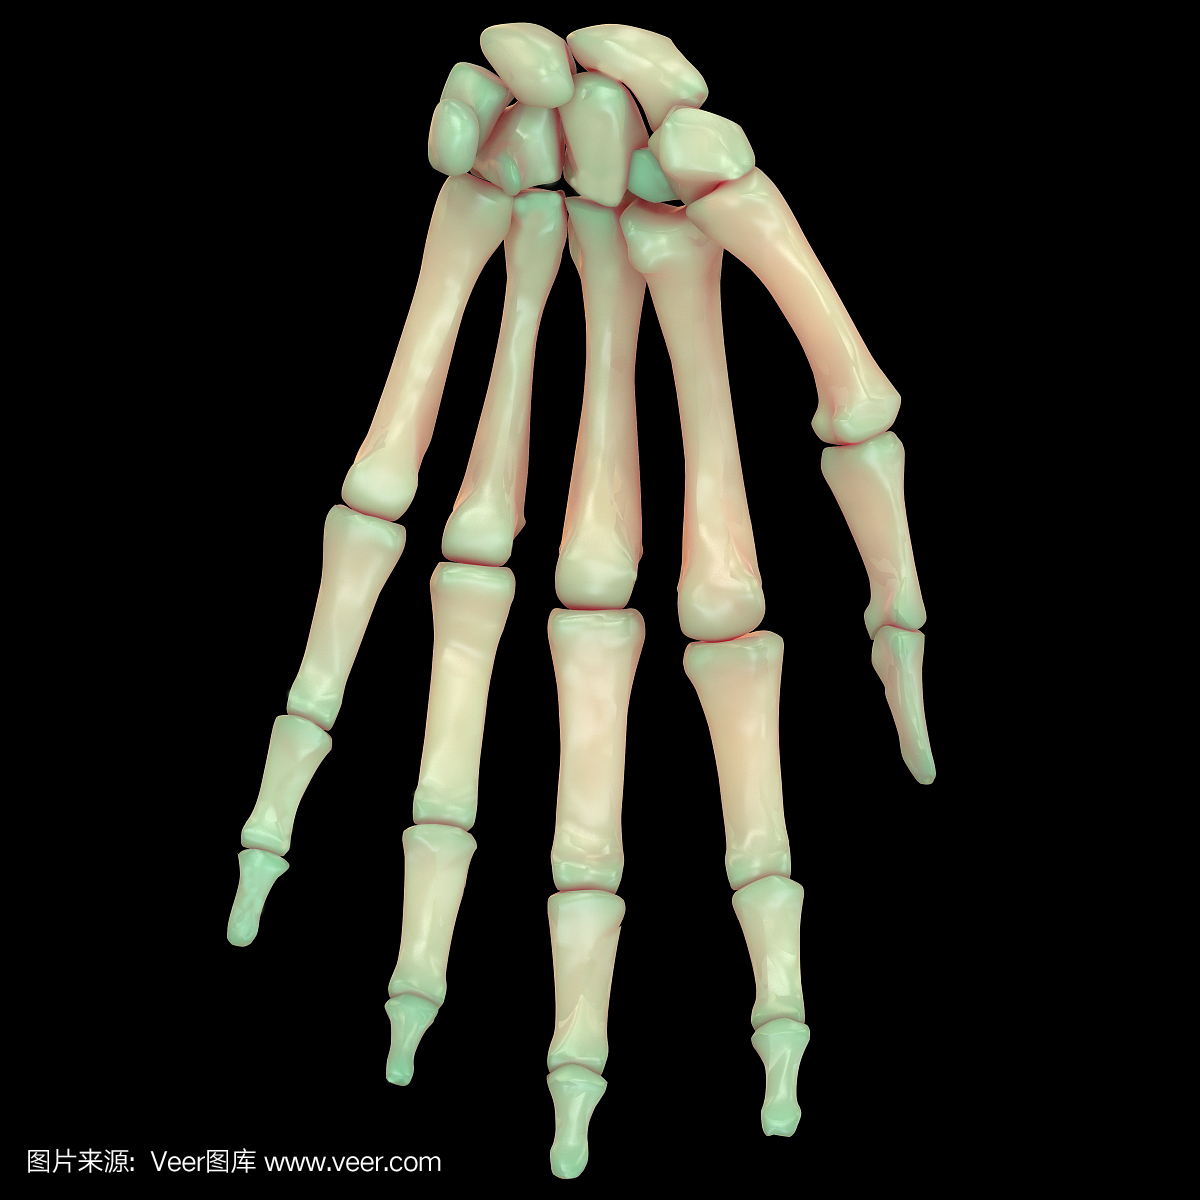 人体骨骼系统手指关节解剖学(前视图)